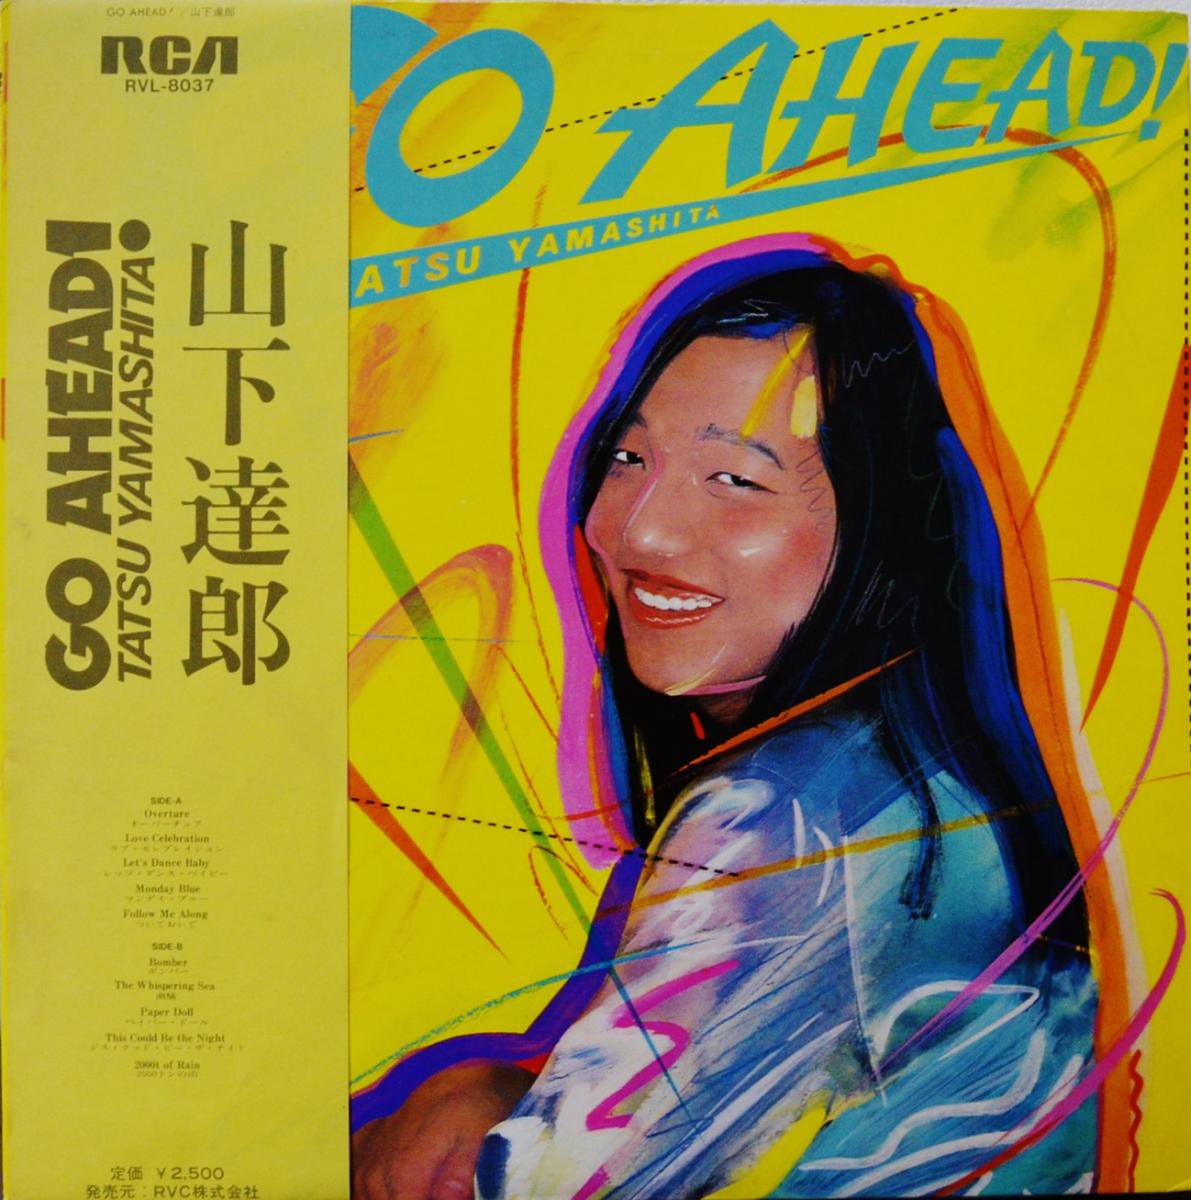 山下達郎 TATSURO YAMASHITA / GO AHEAD! (LP) - HIP TANK RECORDS